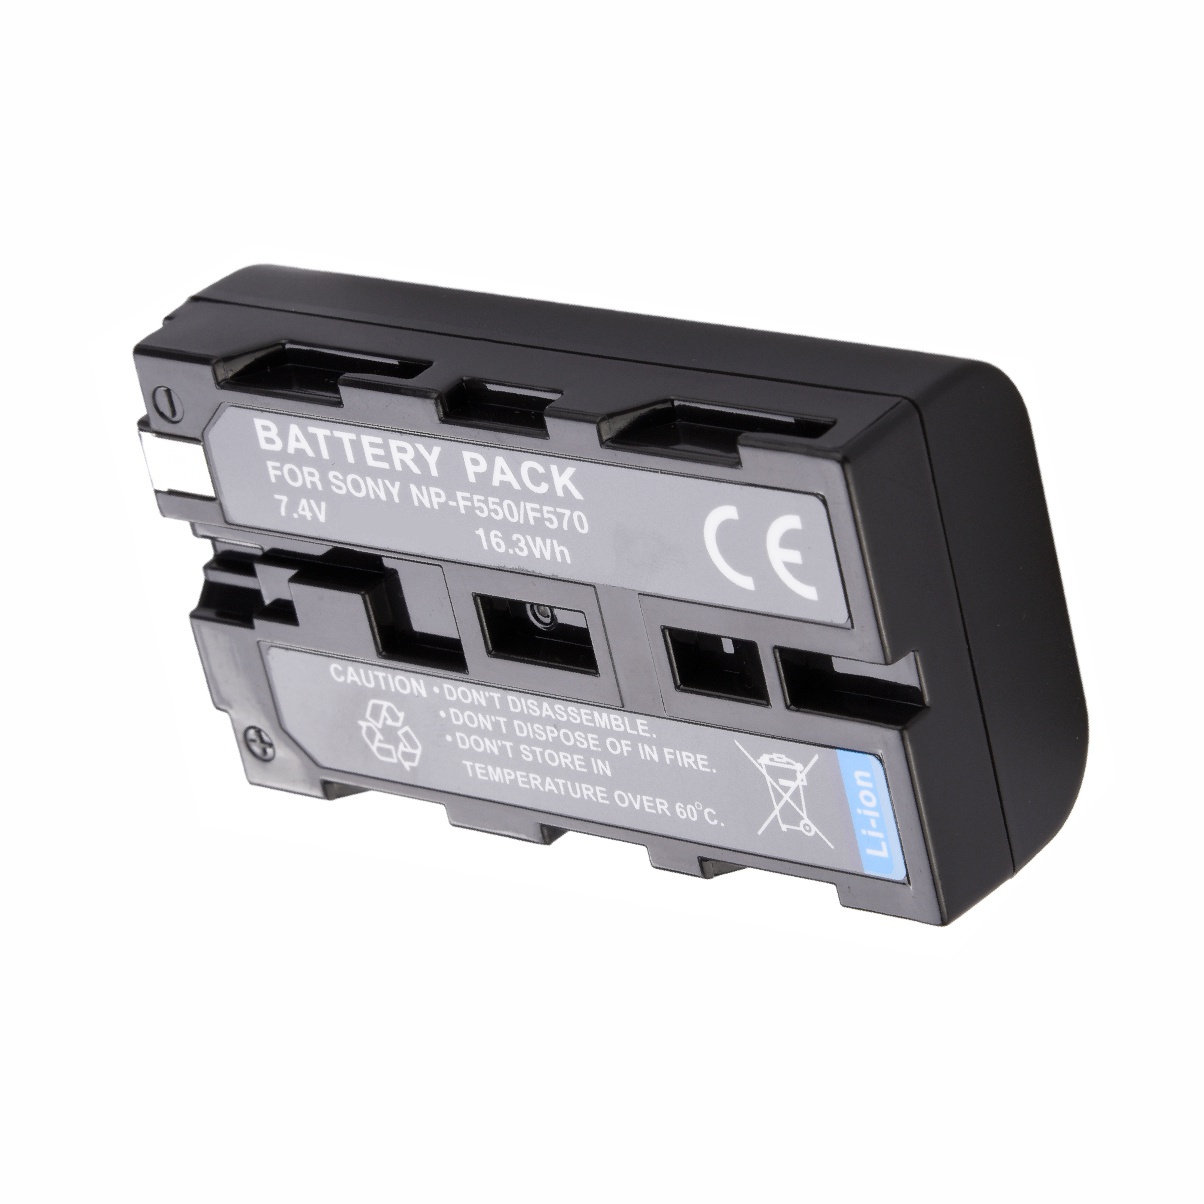 Kit 4 Baterias + Carregador Duplo para Sony